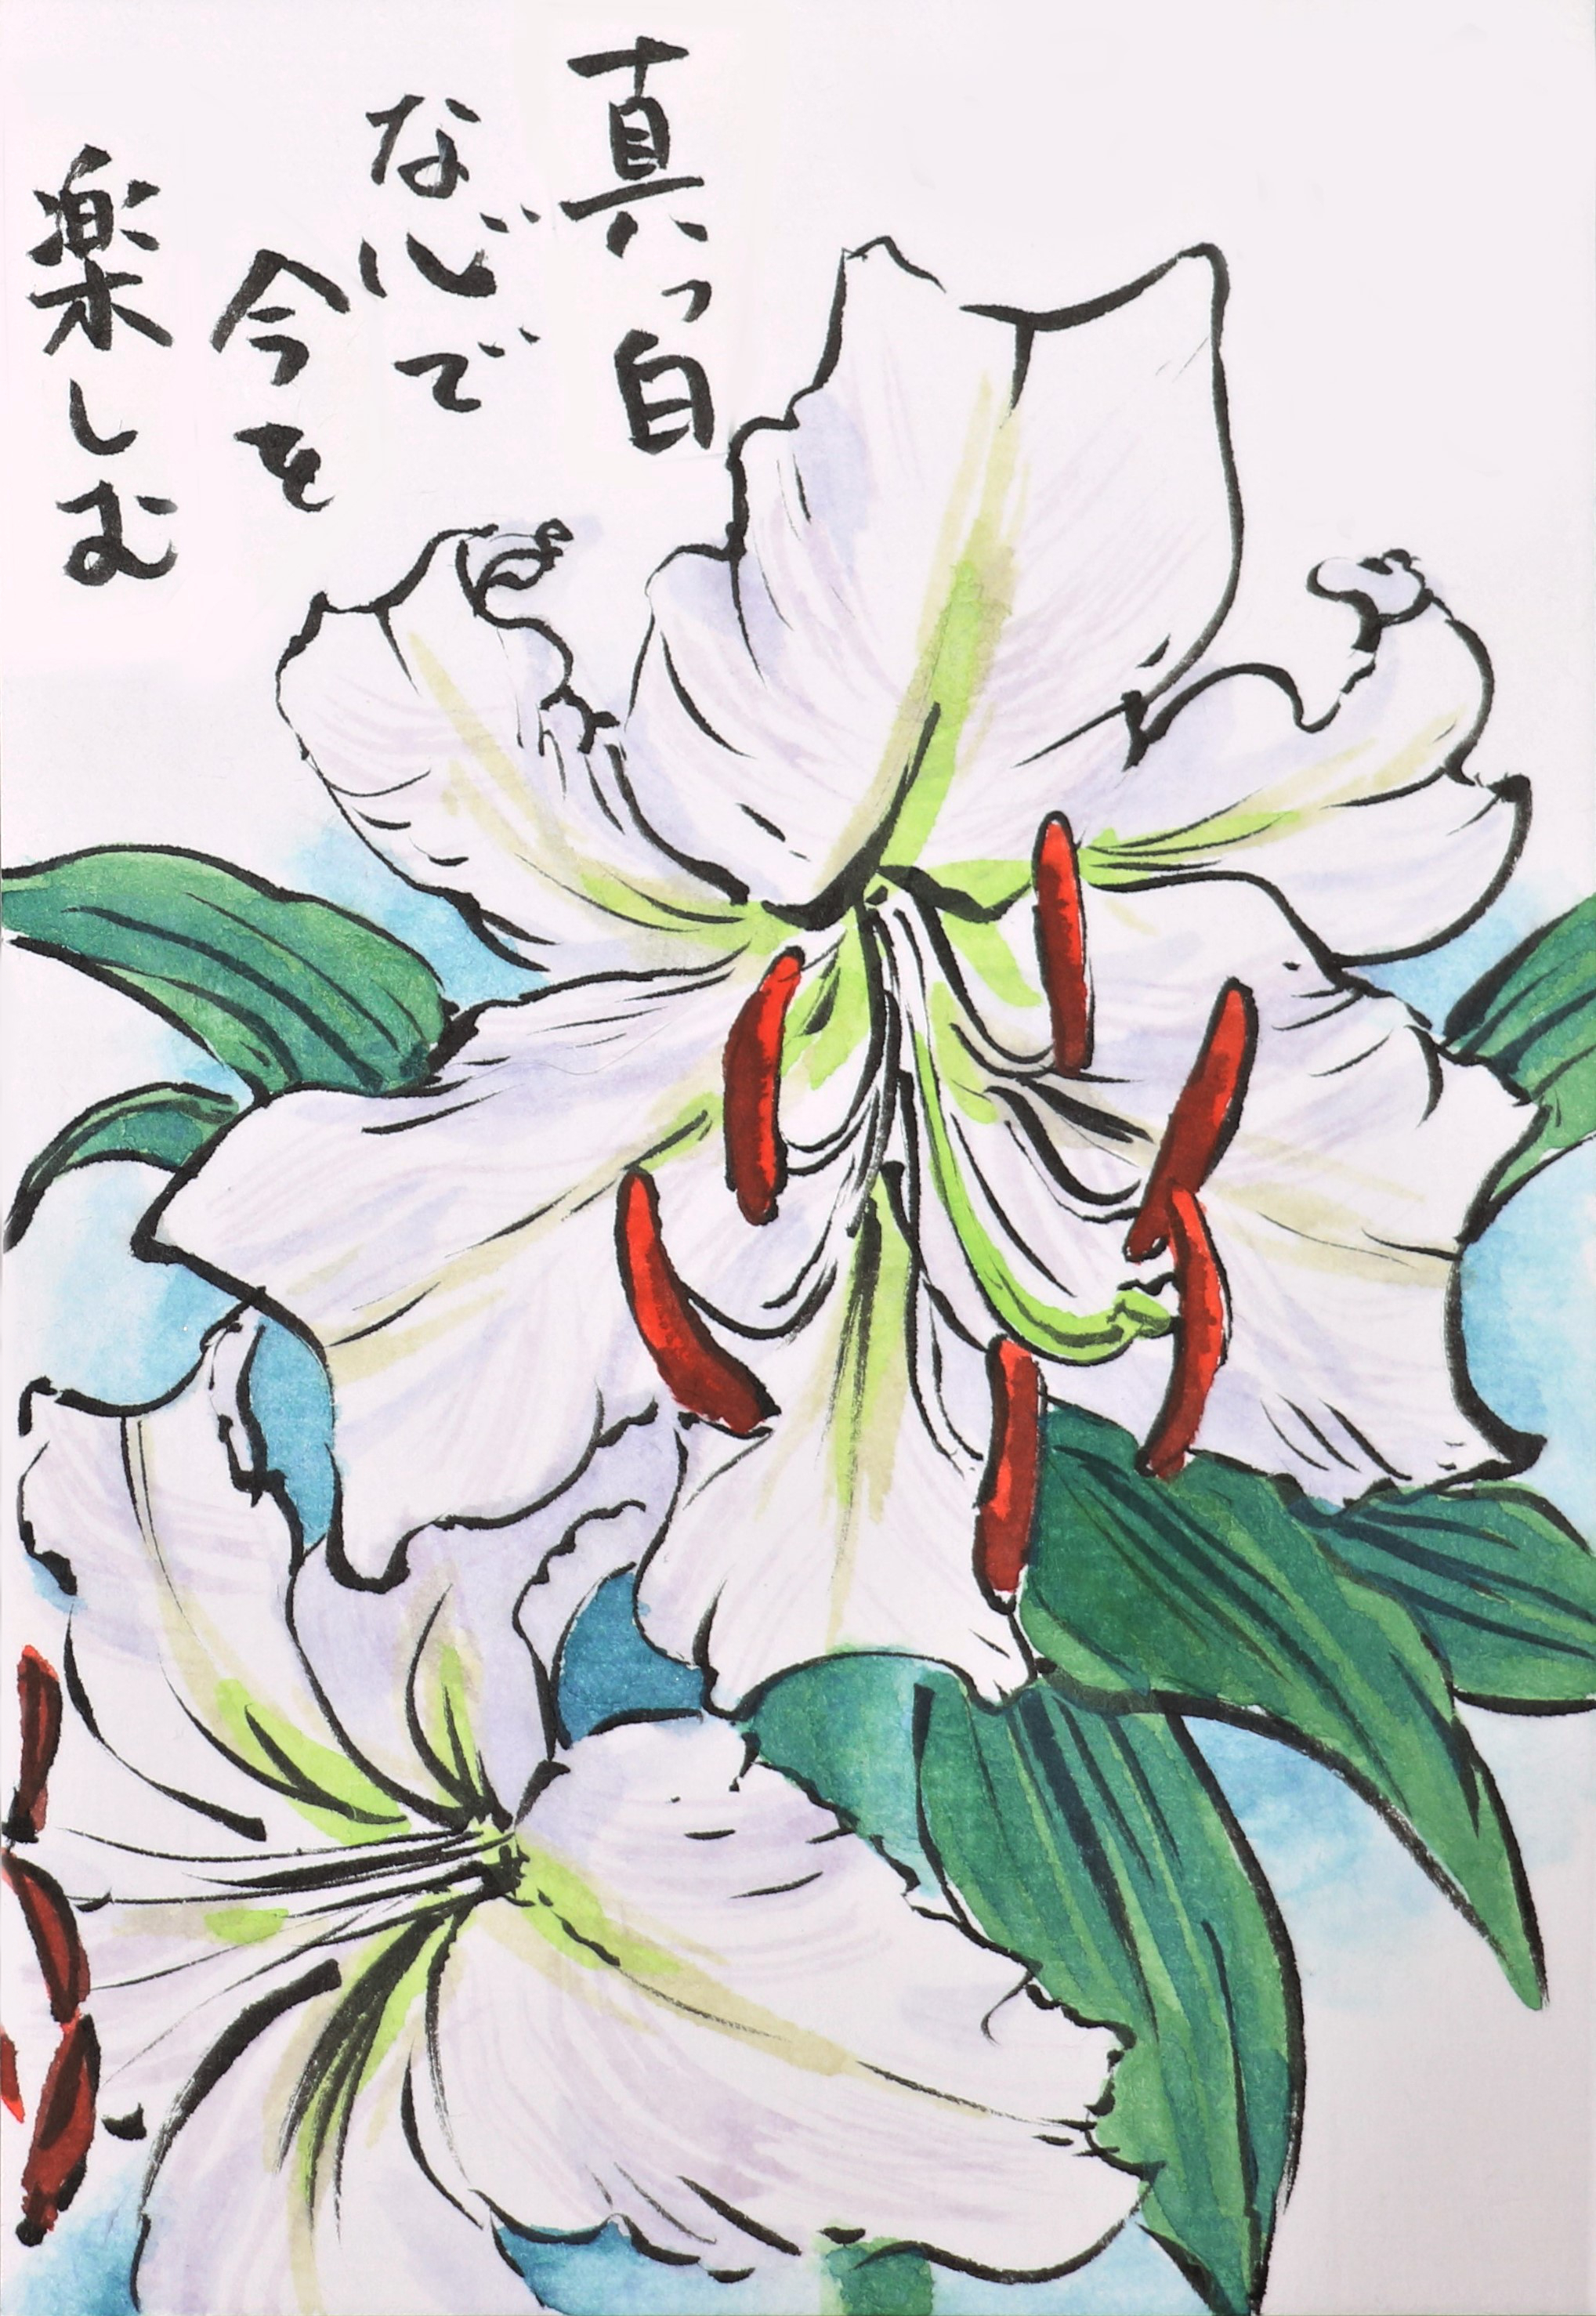 Twitter 上的 快適art絵手紙 初夏から夏にかけて咲く花たち 色んな色があります Youtubeの描き方解説もあります カスブランカ T Co Zmu0ebyksh フレンチラベンダー T Co Px9fkpxuop アカンサス T Co 6grfhkiklg 絵手紙 快適絵手紙